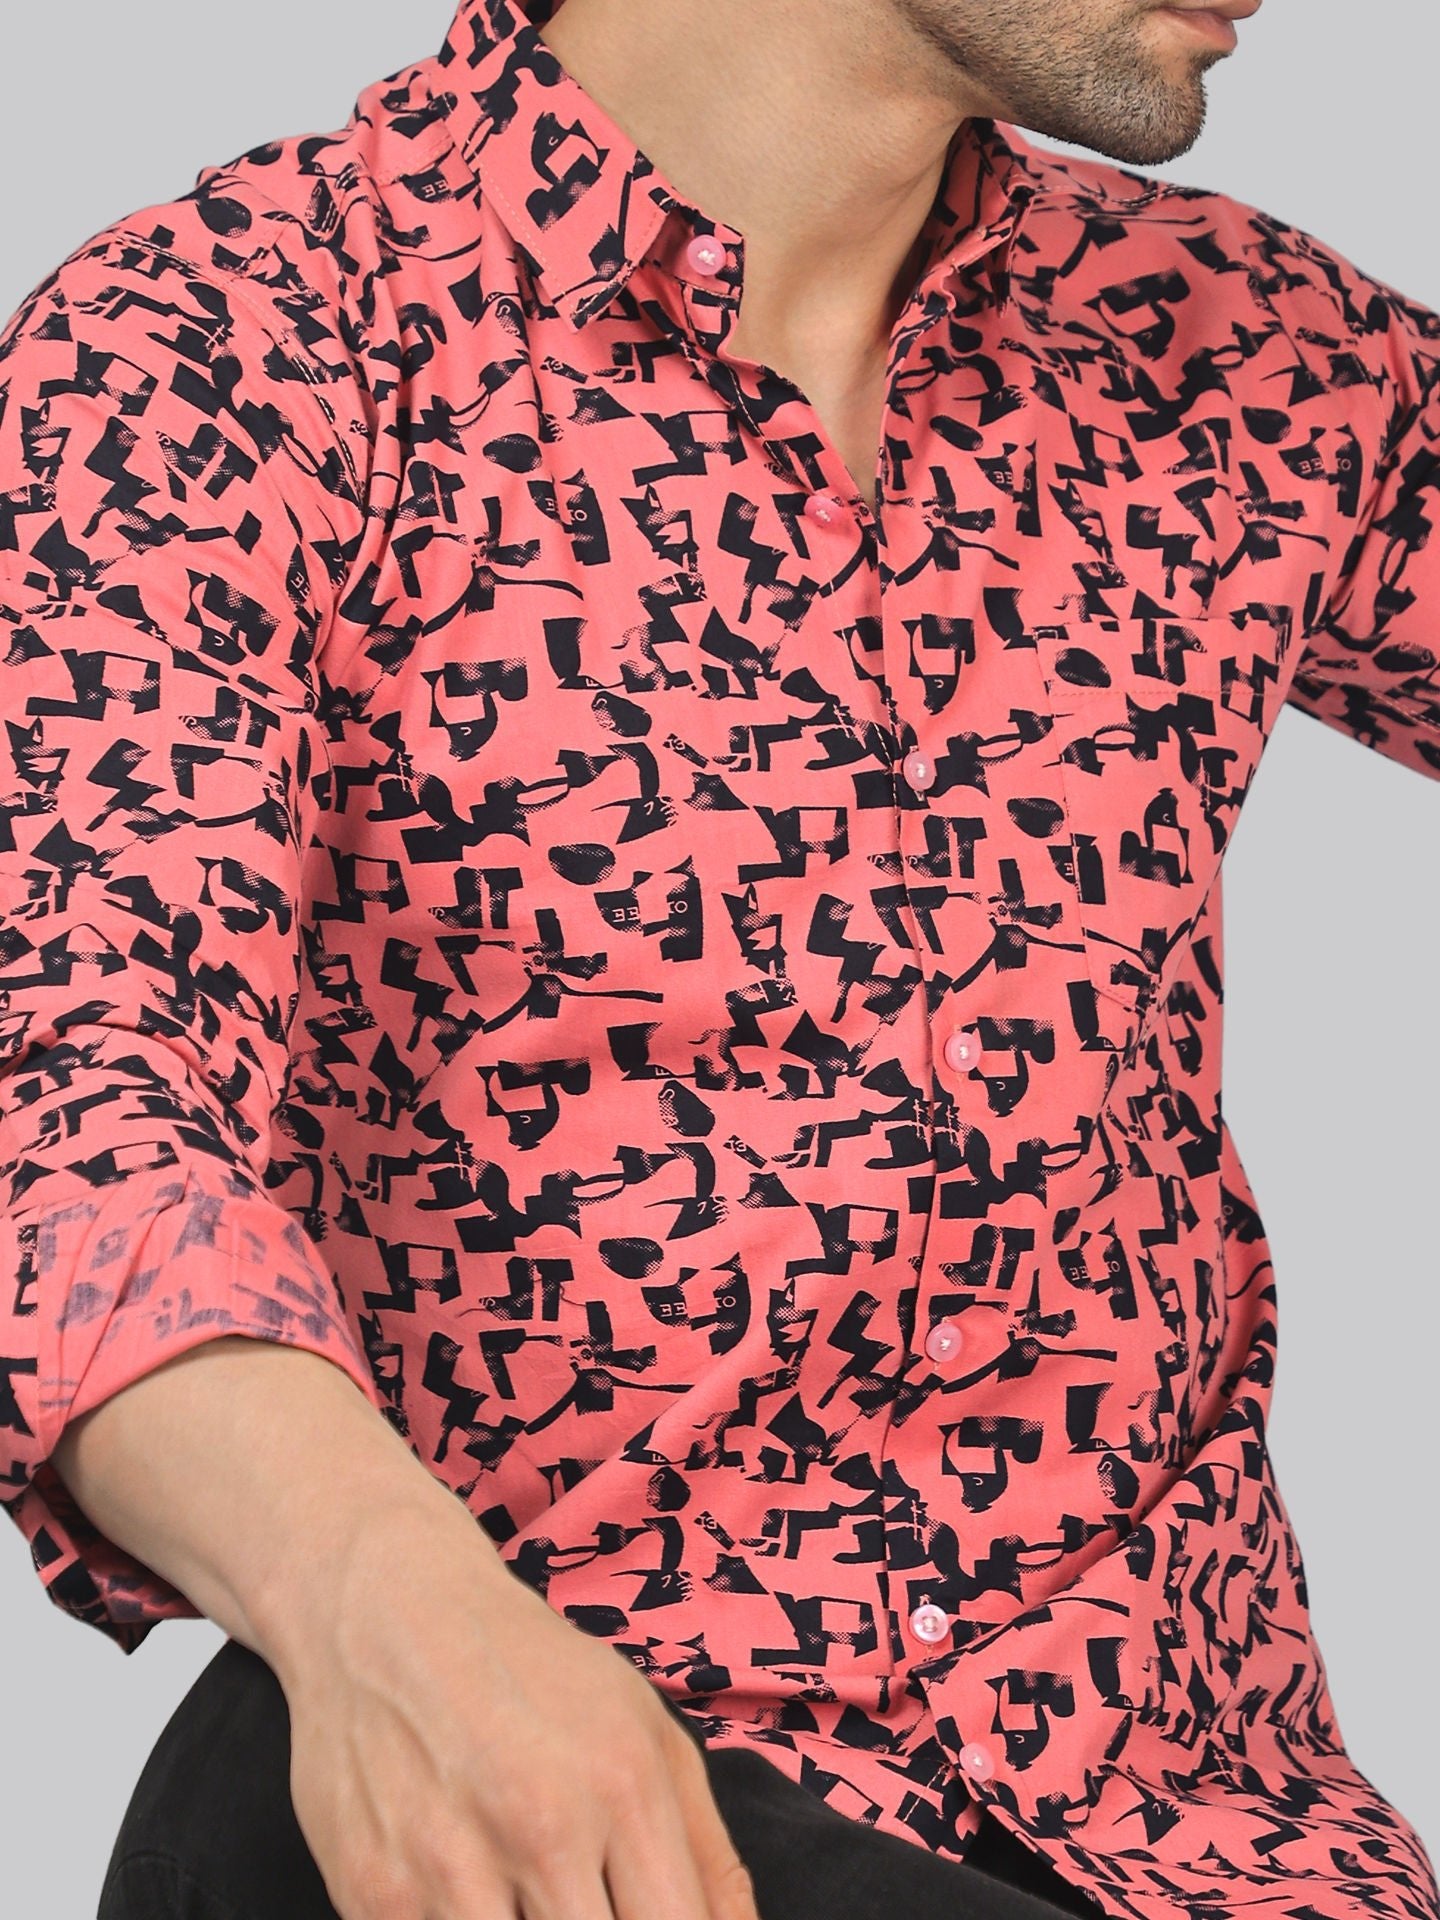 Artisanal Men's Printed Full Sleeve Casual Linen Shirt - TryBuy® USA🇺🇸